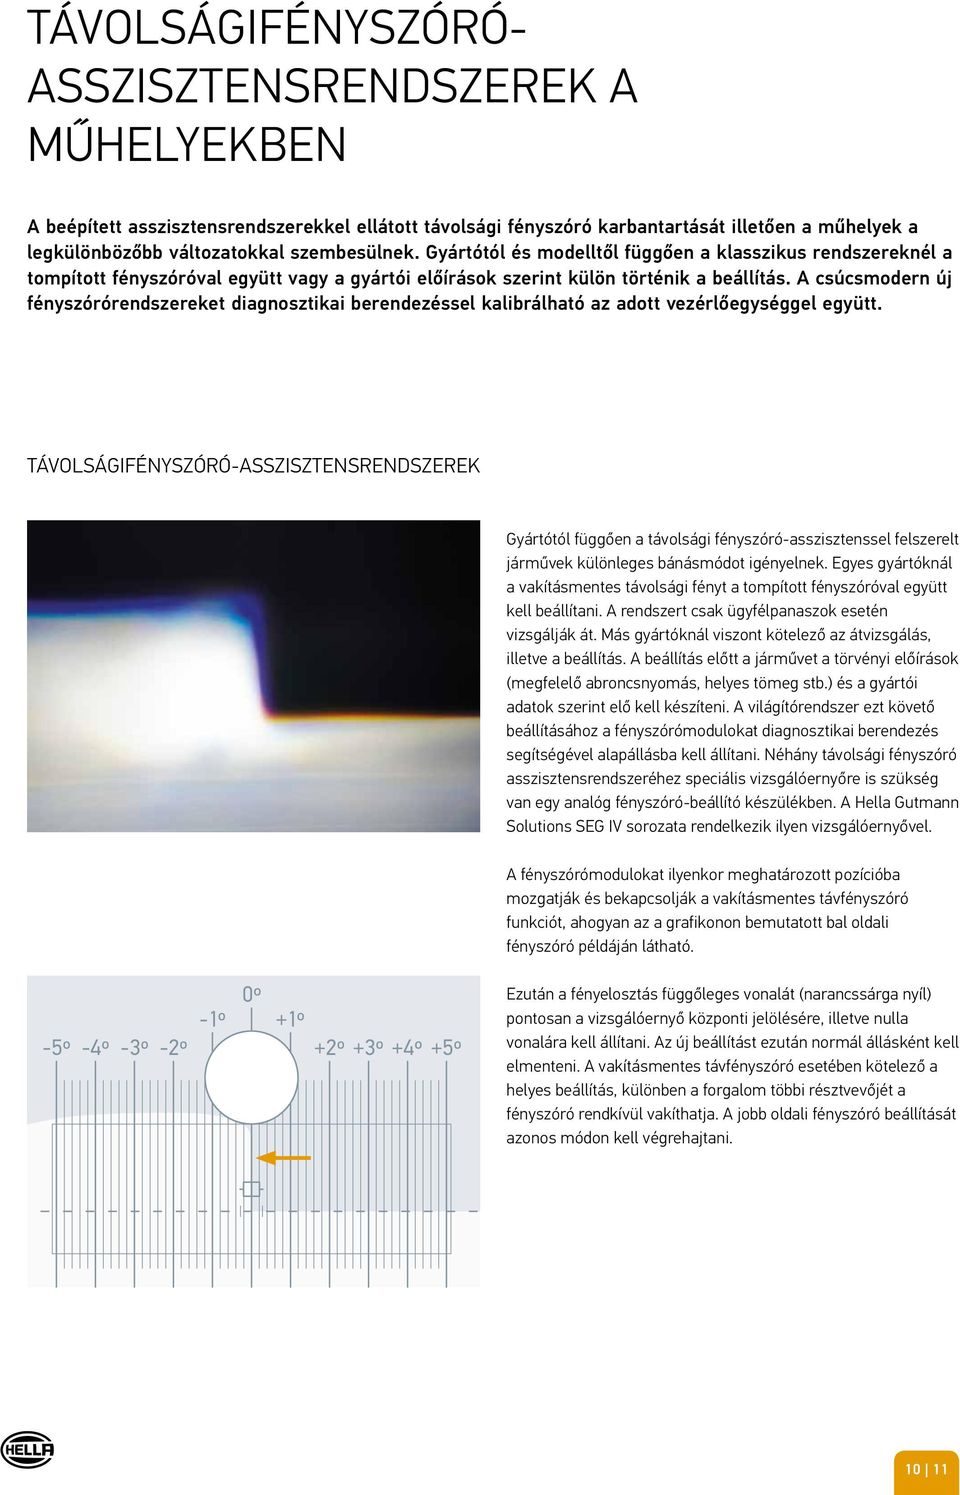 A csúcsmodern új fényszórórendszereket diagnosztikai berendezéssel kalibrálható az adott vezérlőegységgel együtt.